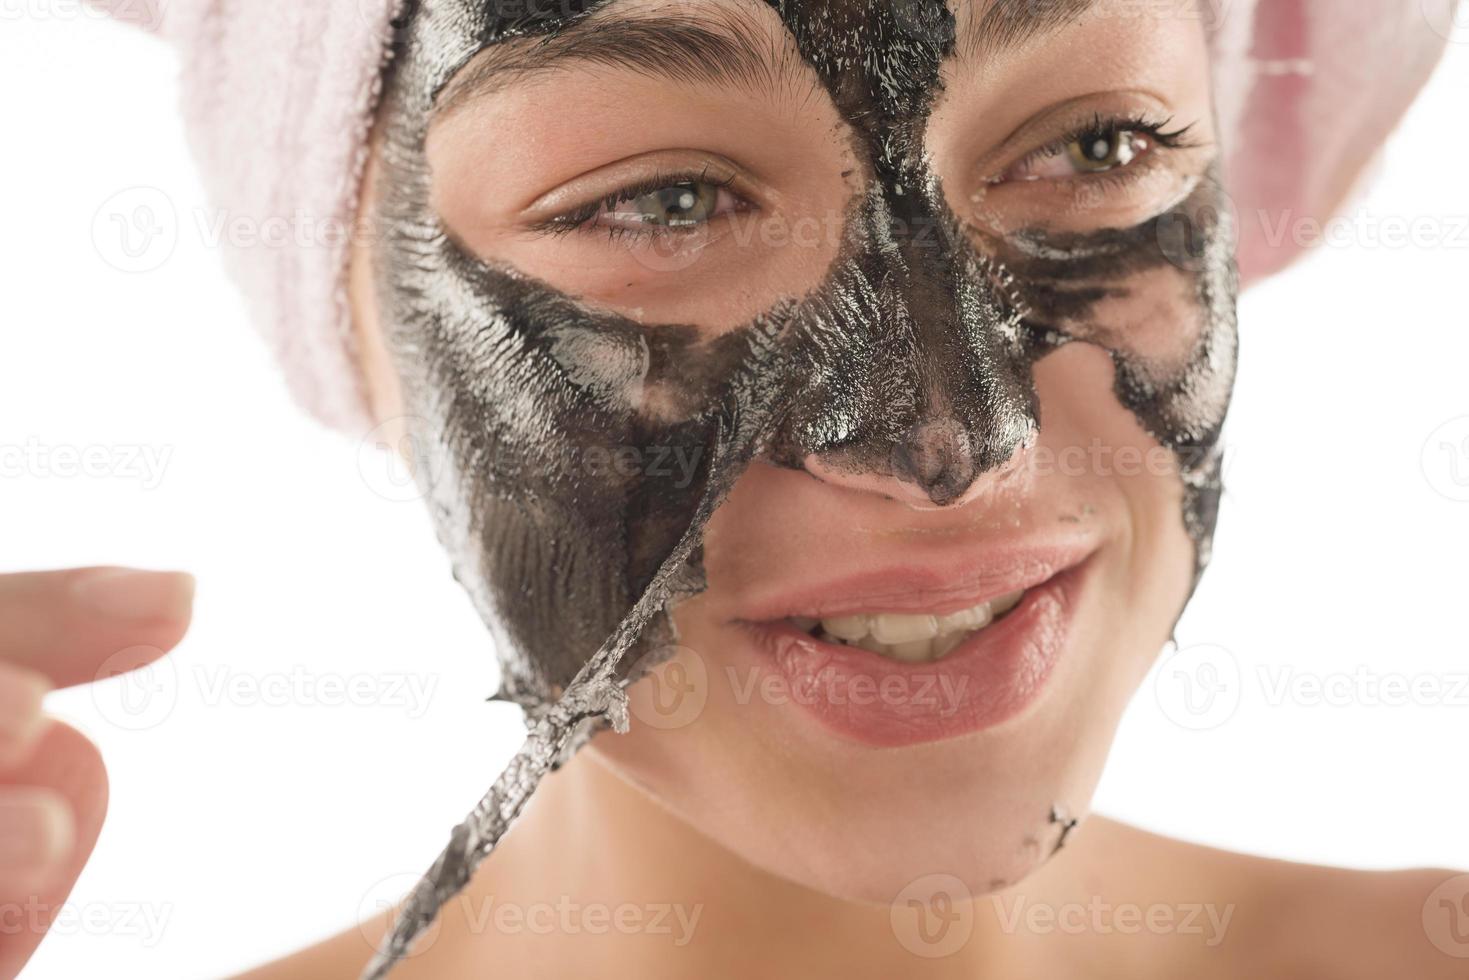 máscara facial preta. linda garota acumulando máscara preta. conceito de beleza foto